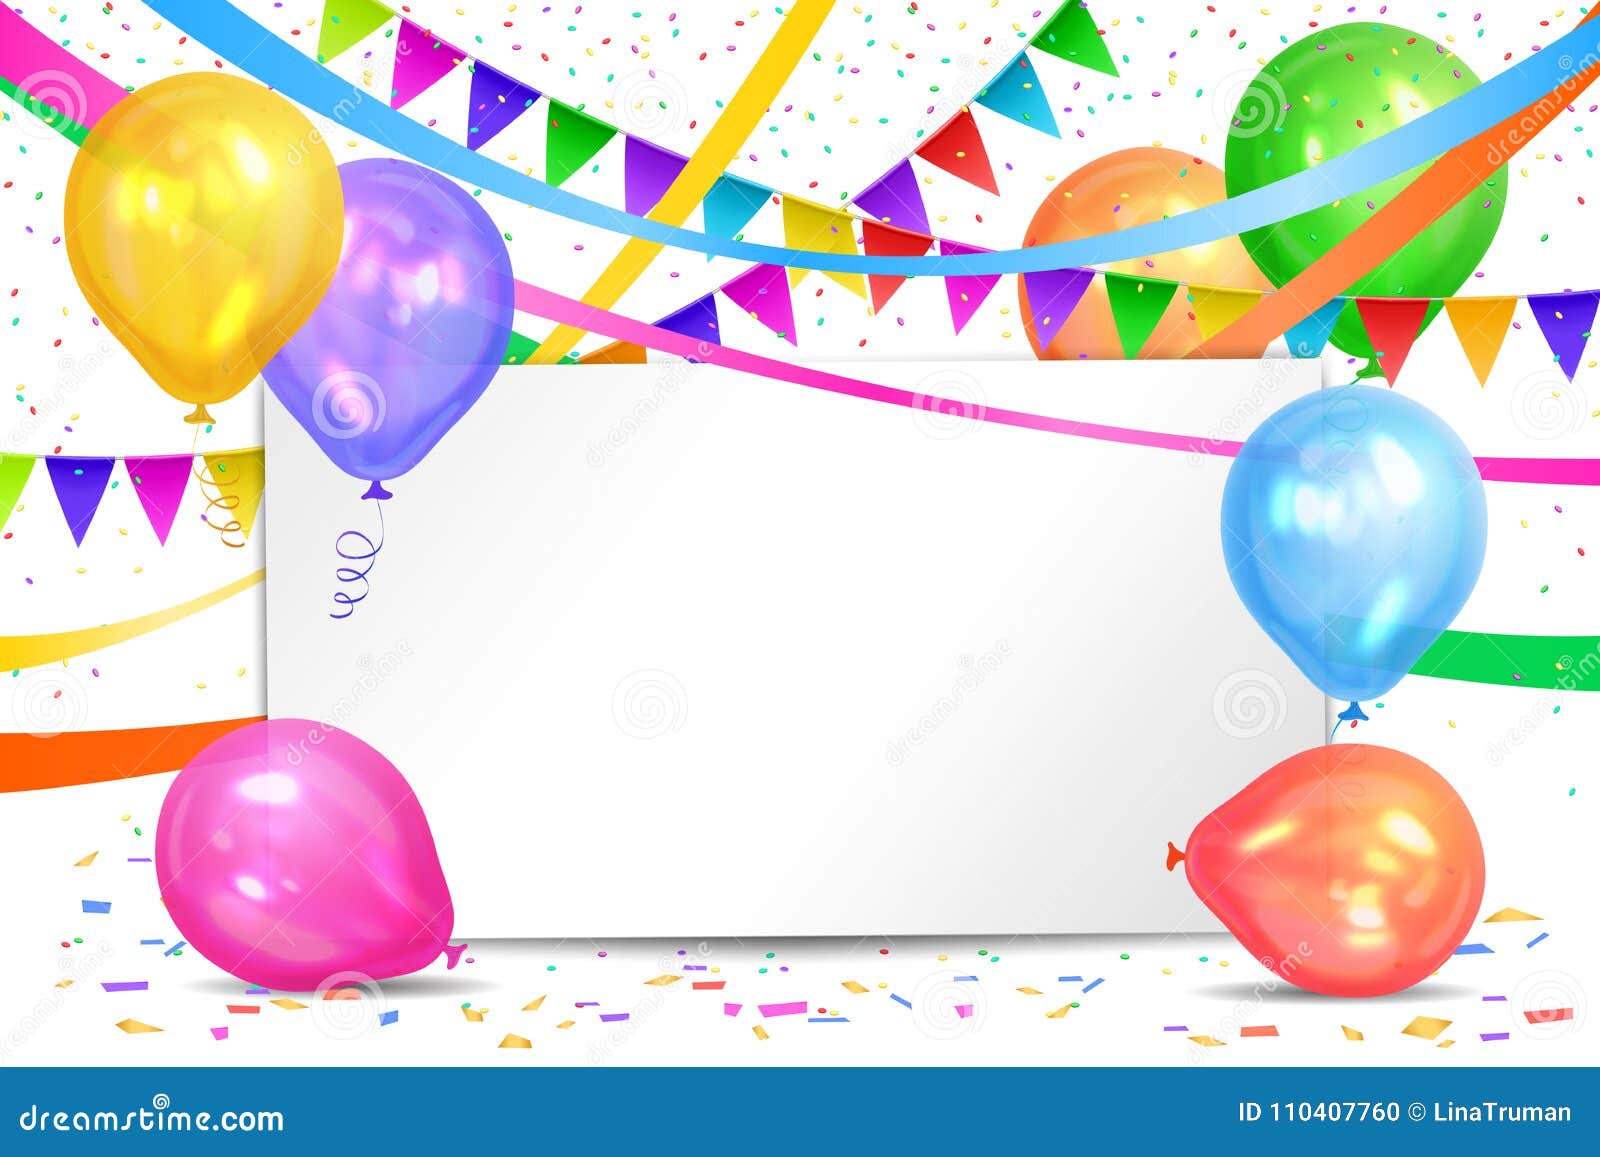 Joyeux anniversaire ballons colorés